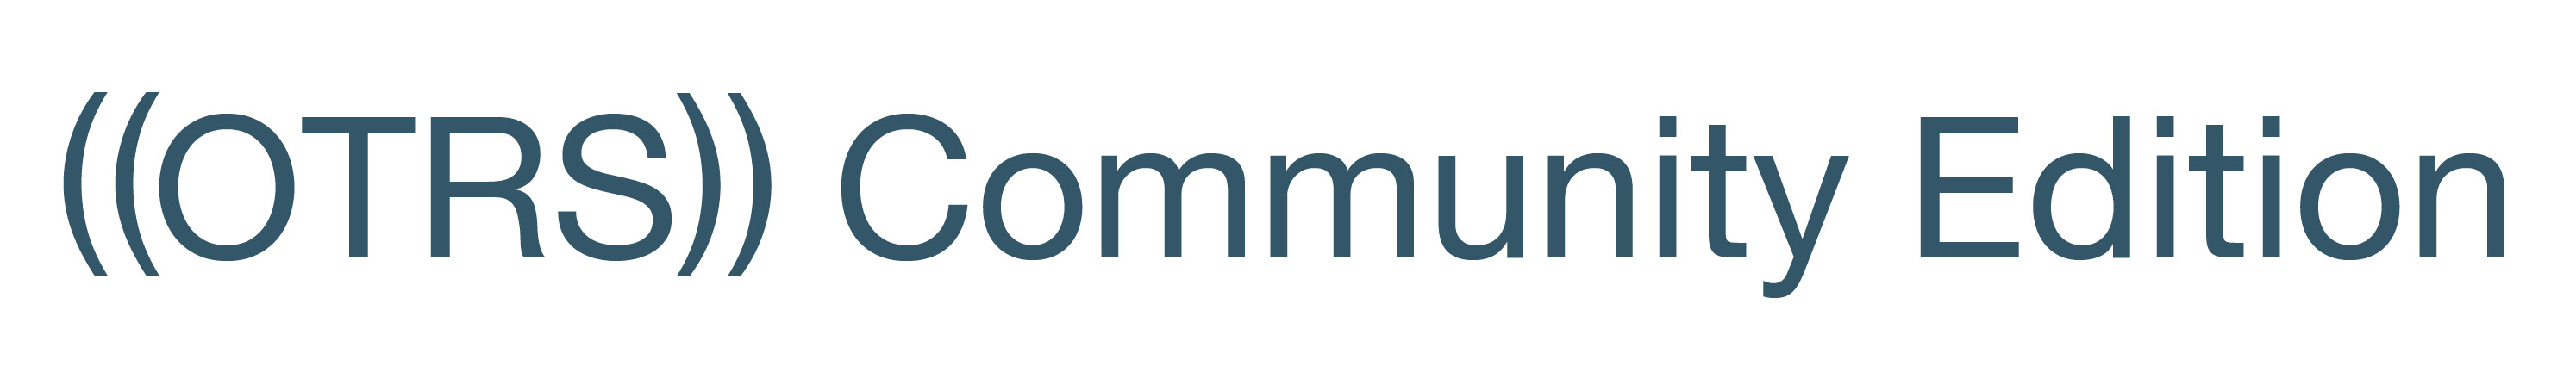 ((OTRS)) Community Edition Logo